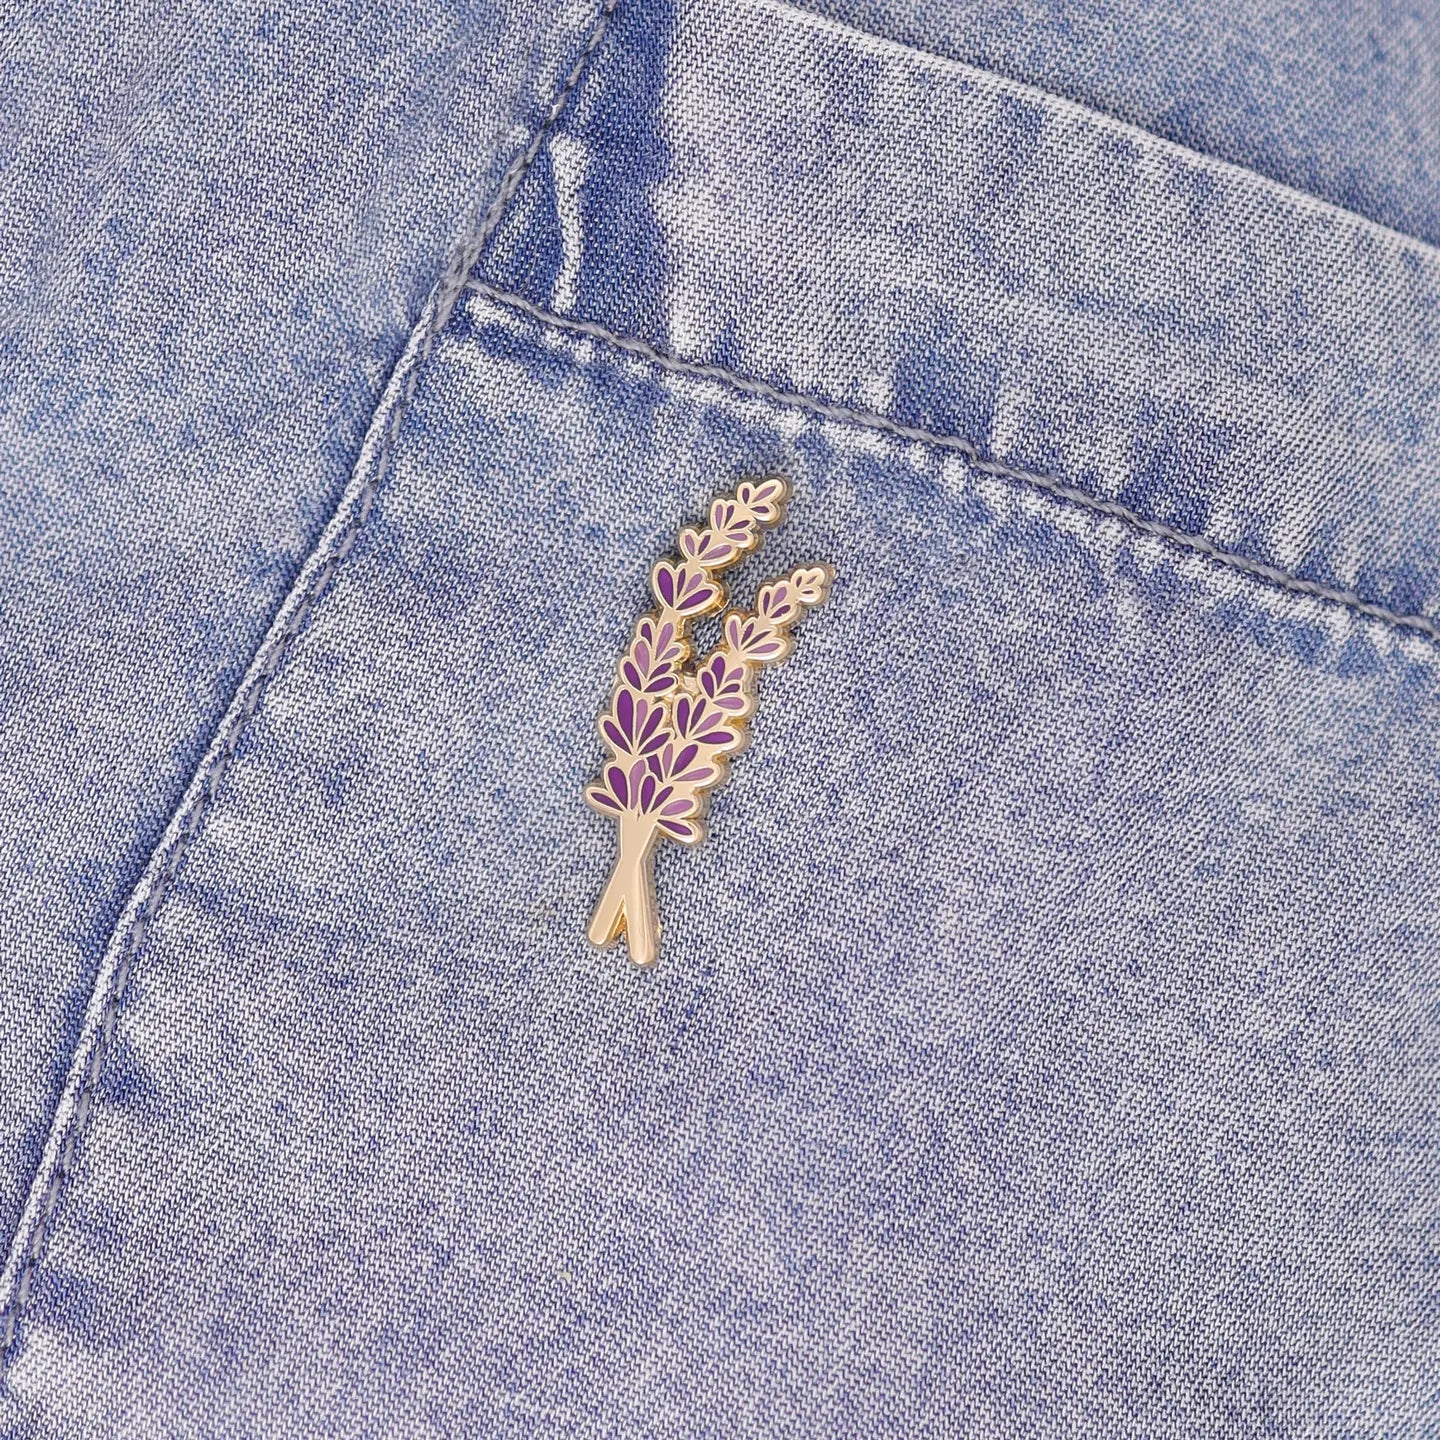 Lavender Enamel Pin